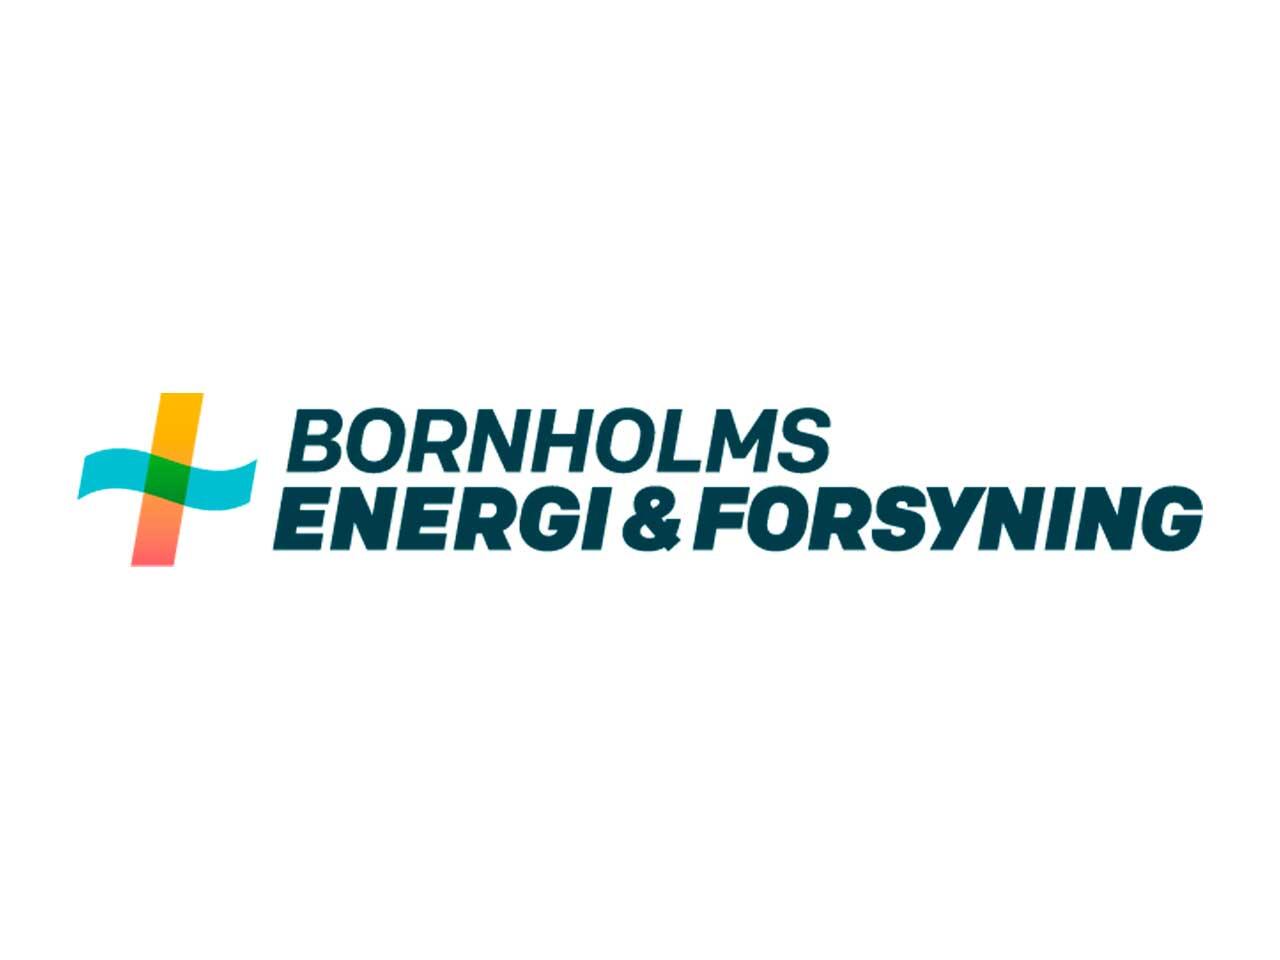 Det frie valg /månedsregning) Bornholms energi & forsyning